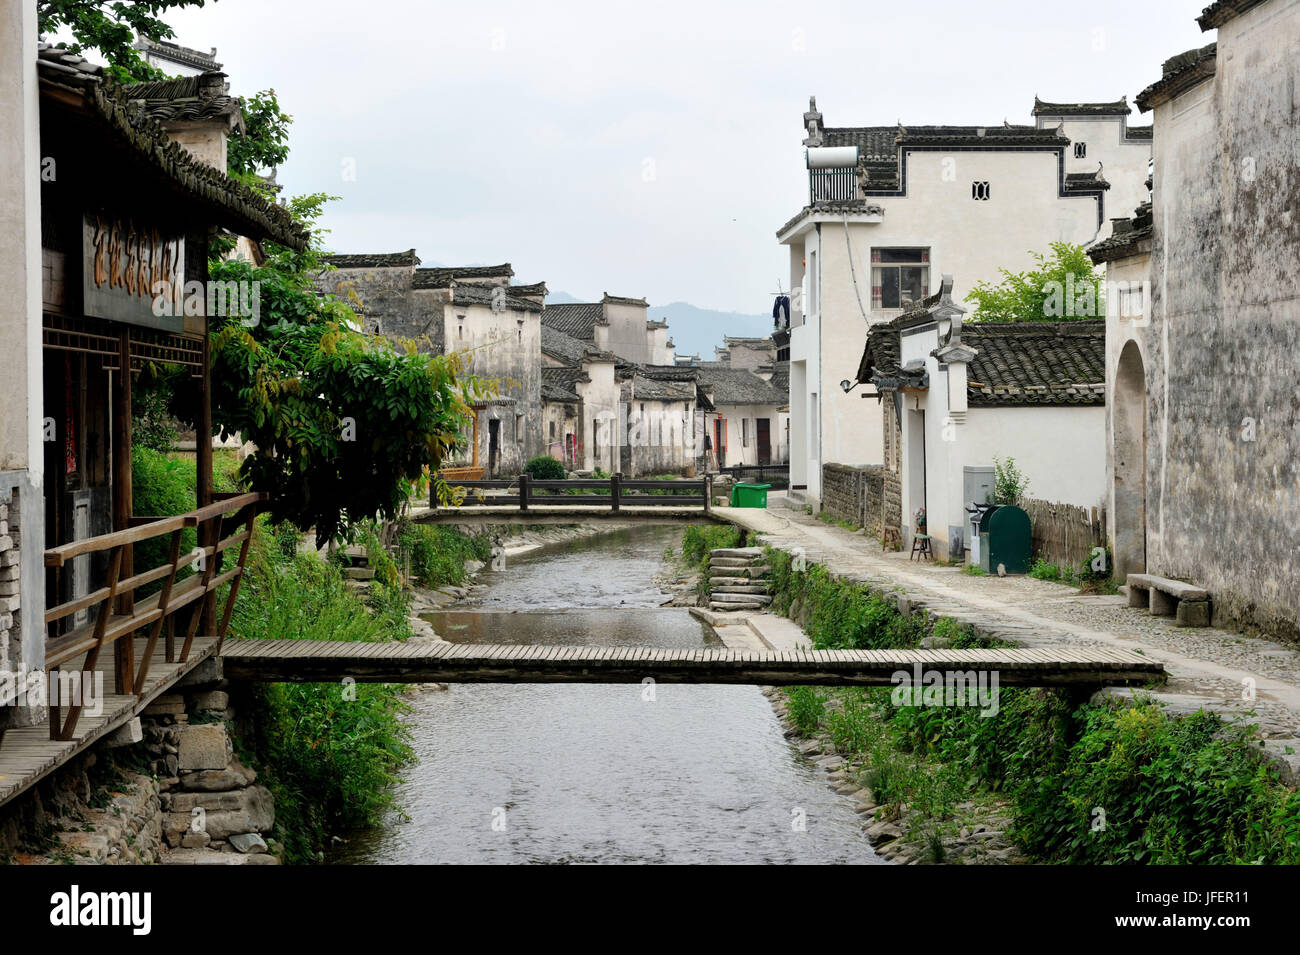 China, Anhui province, Lucun village Stock Photo